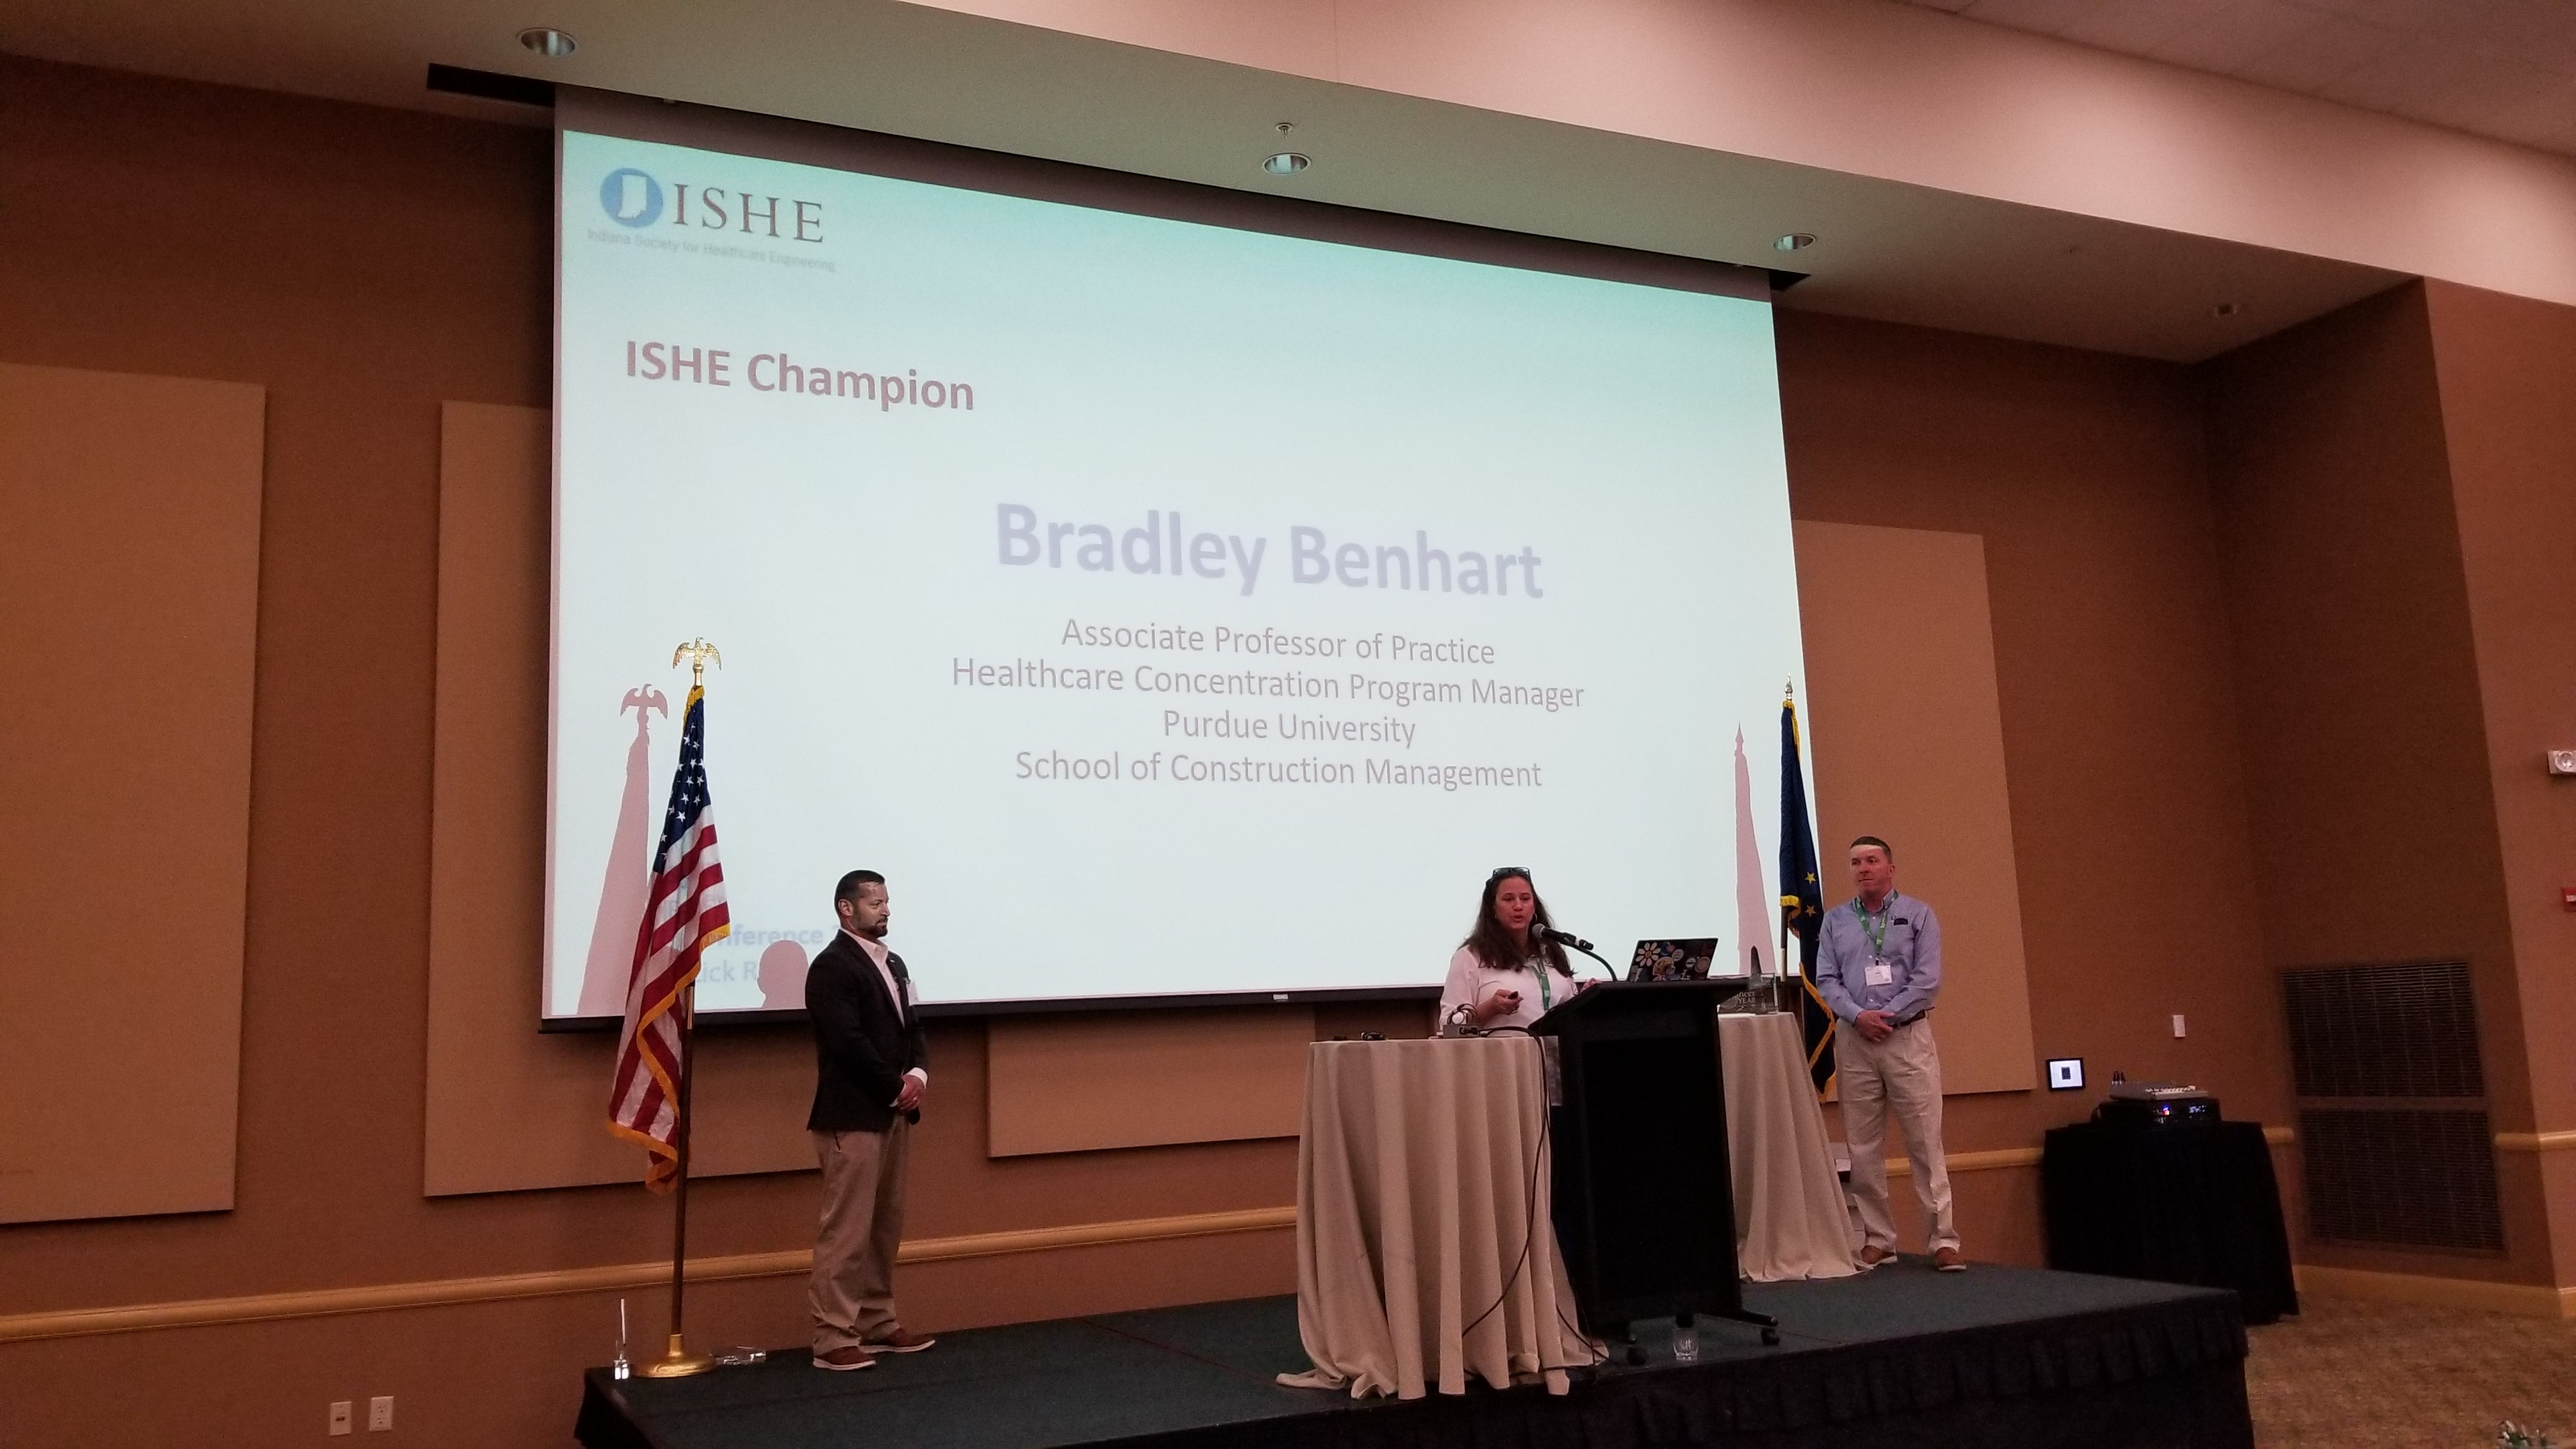 ISHE Champion - Brad Benhart